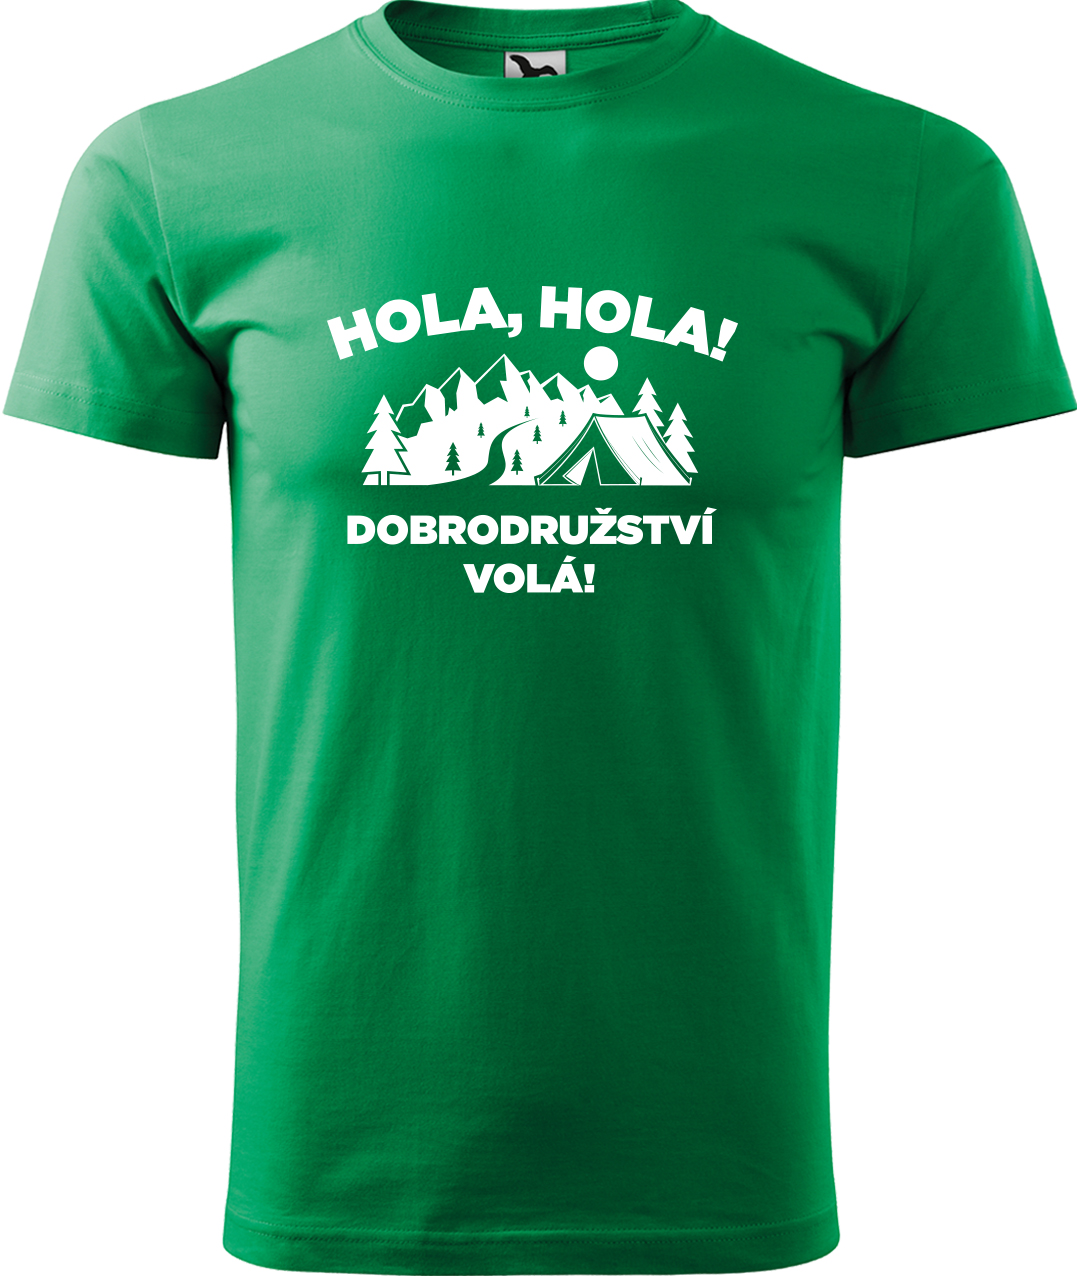 Pánské cestovatelské tričko - Hola hola! Dobrodružství volá! Velikost: S, Barva: Středně zelená (16), Střih: pánský